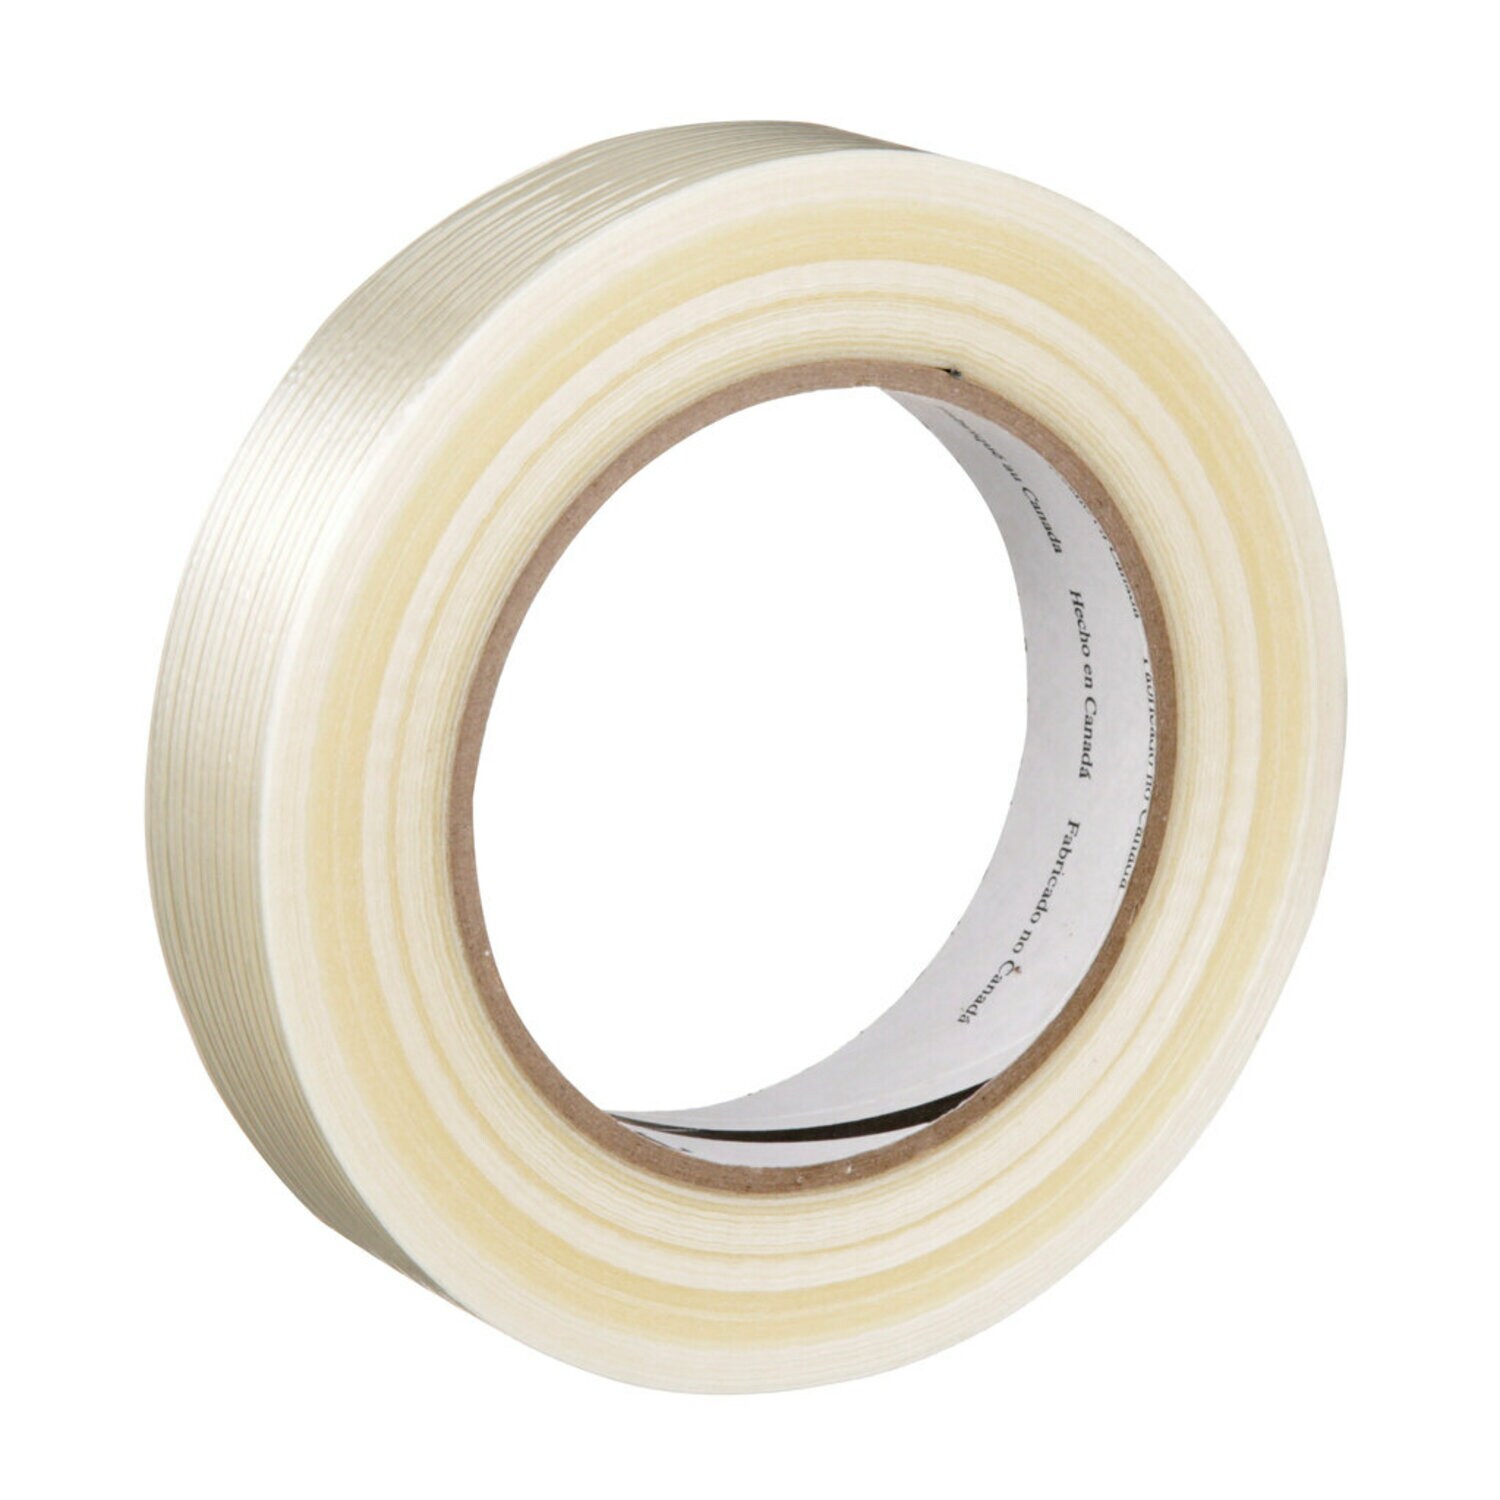 7100091942 - Tartan Filament Tape 8934, Clear, 24 mm x 330 m, 4 mil, 12 rolls per
case